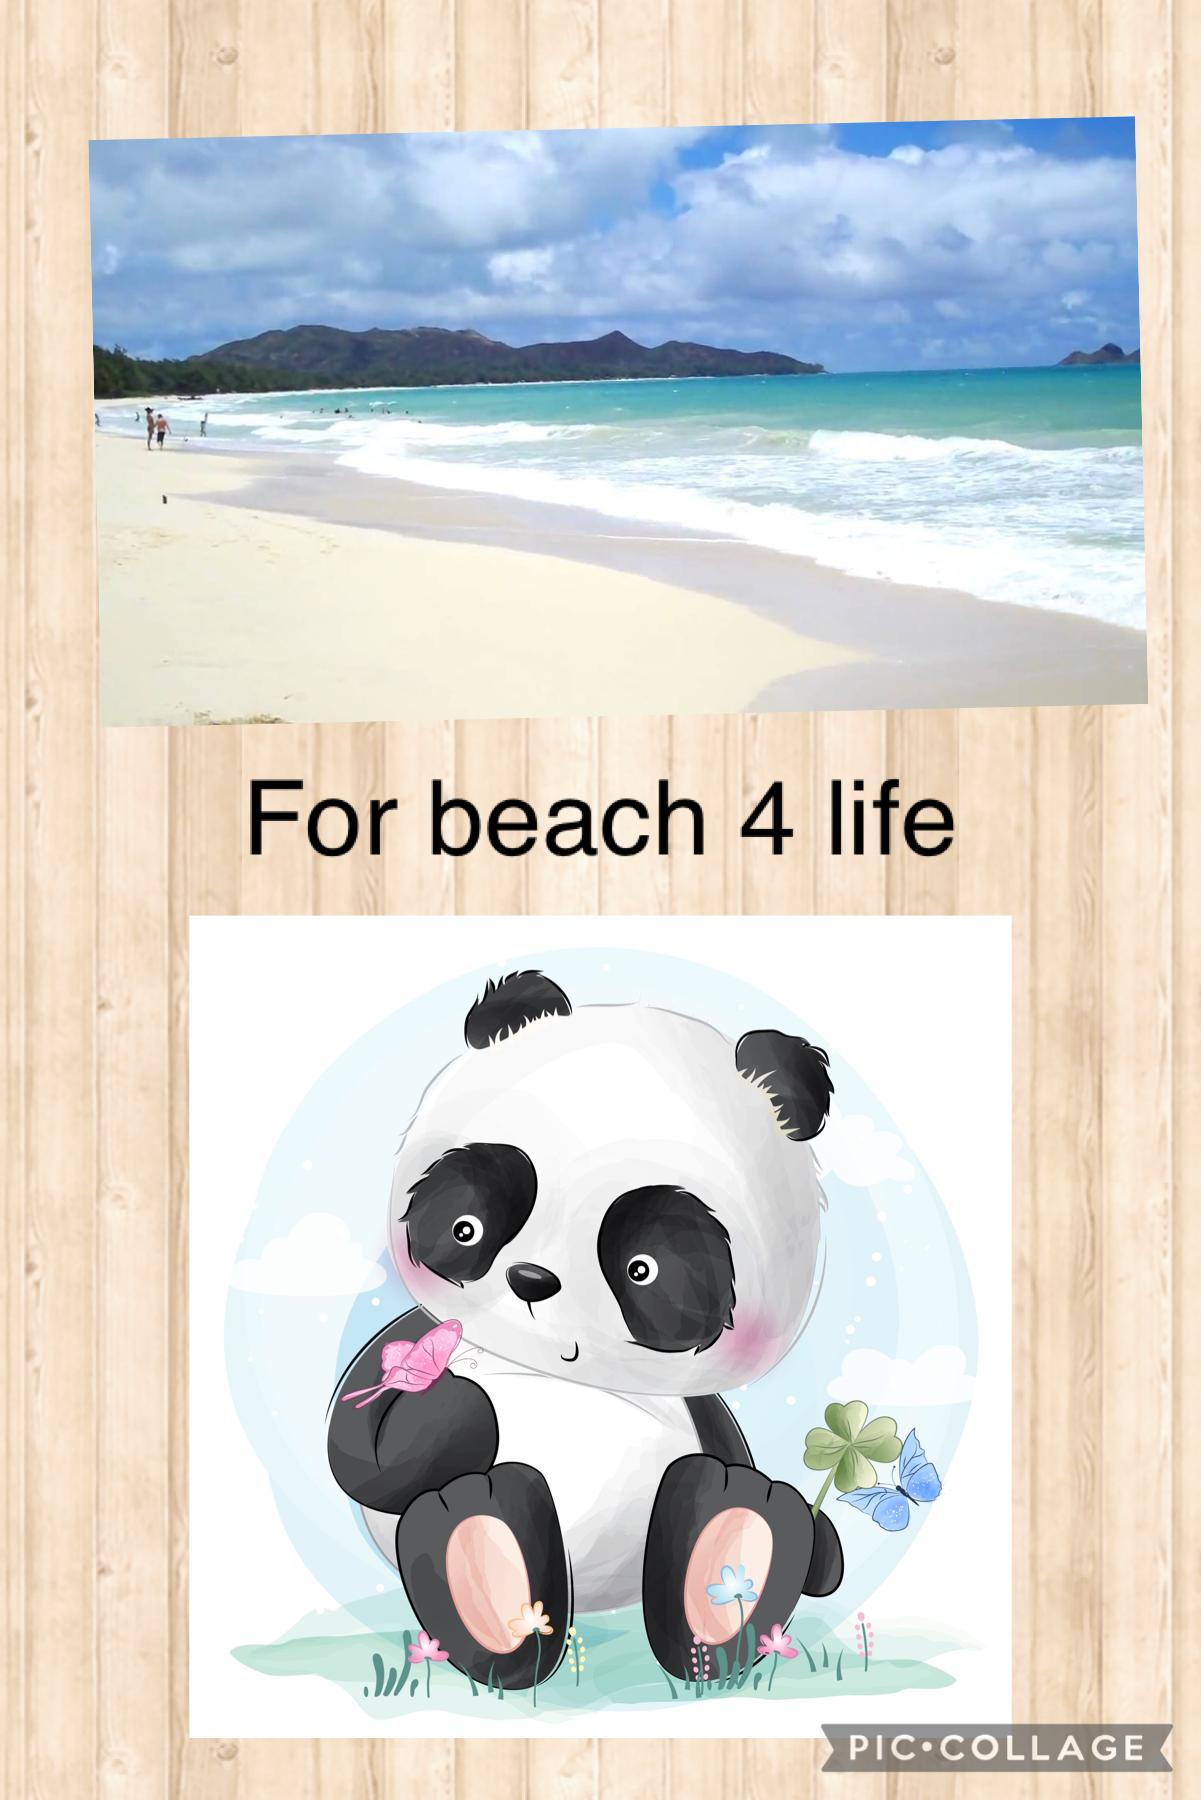 For beach 4 life